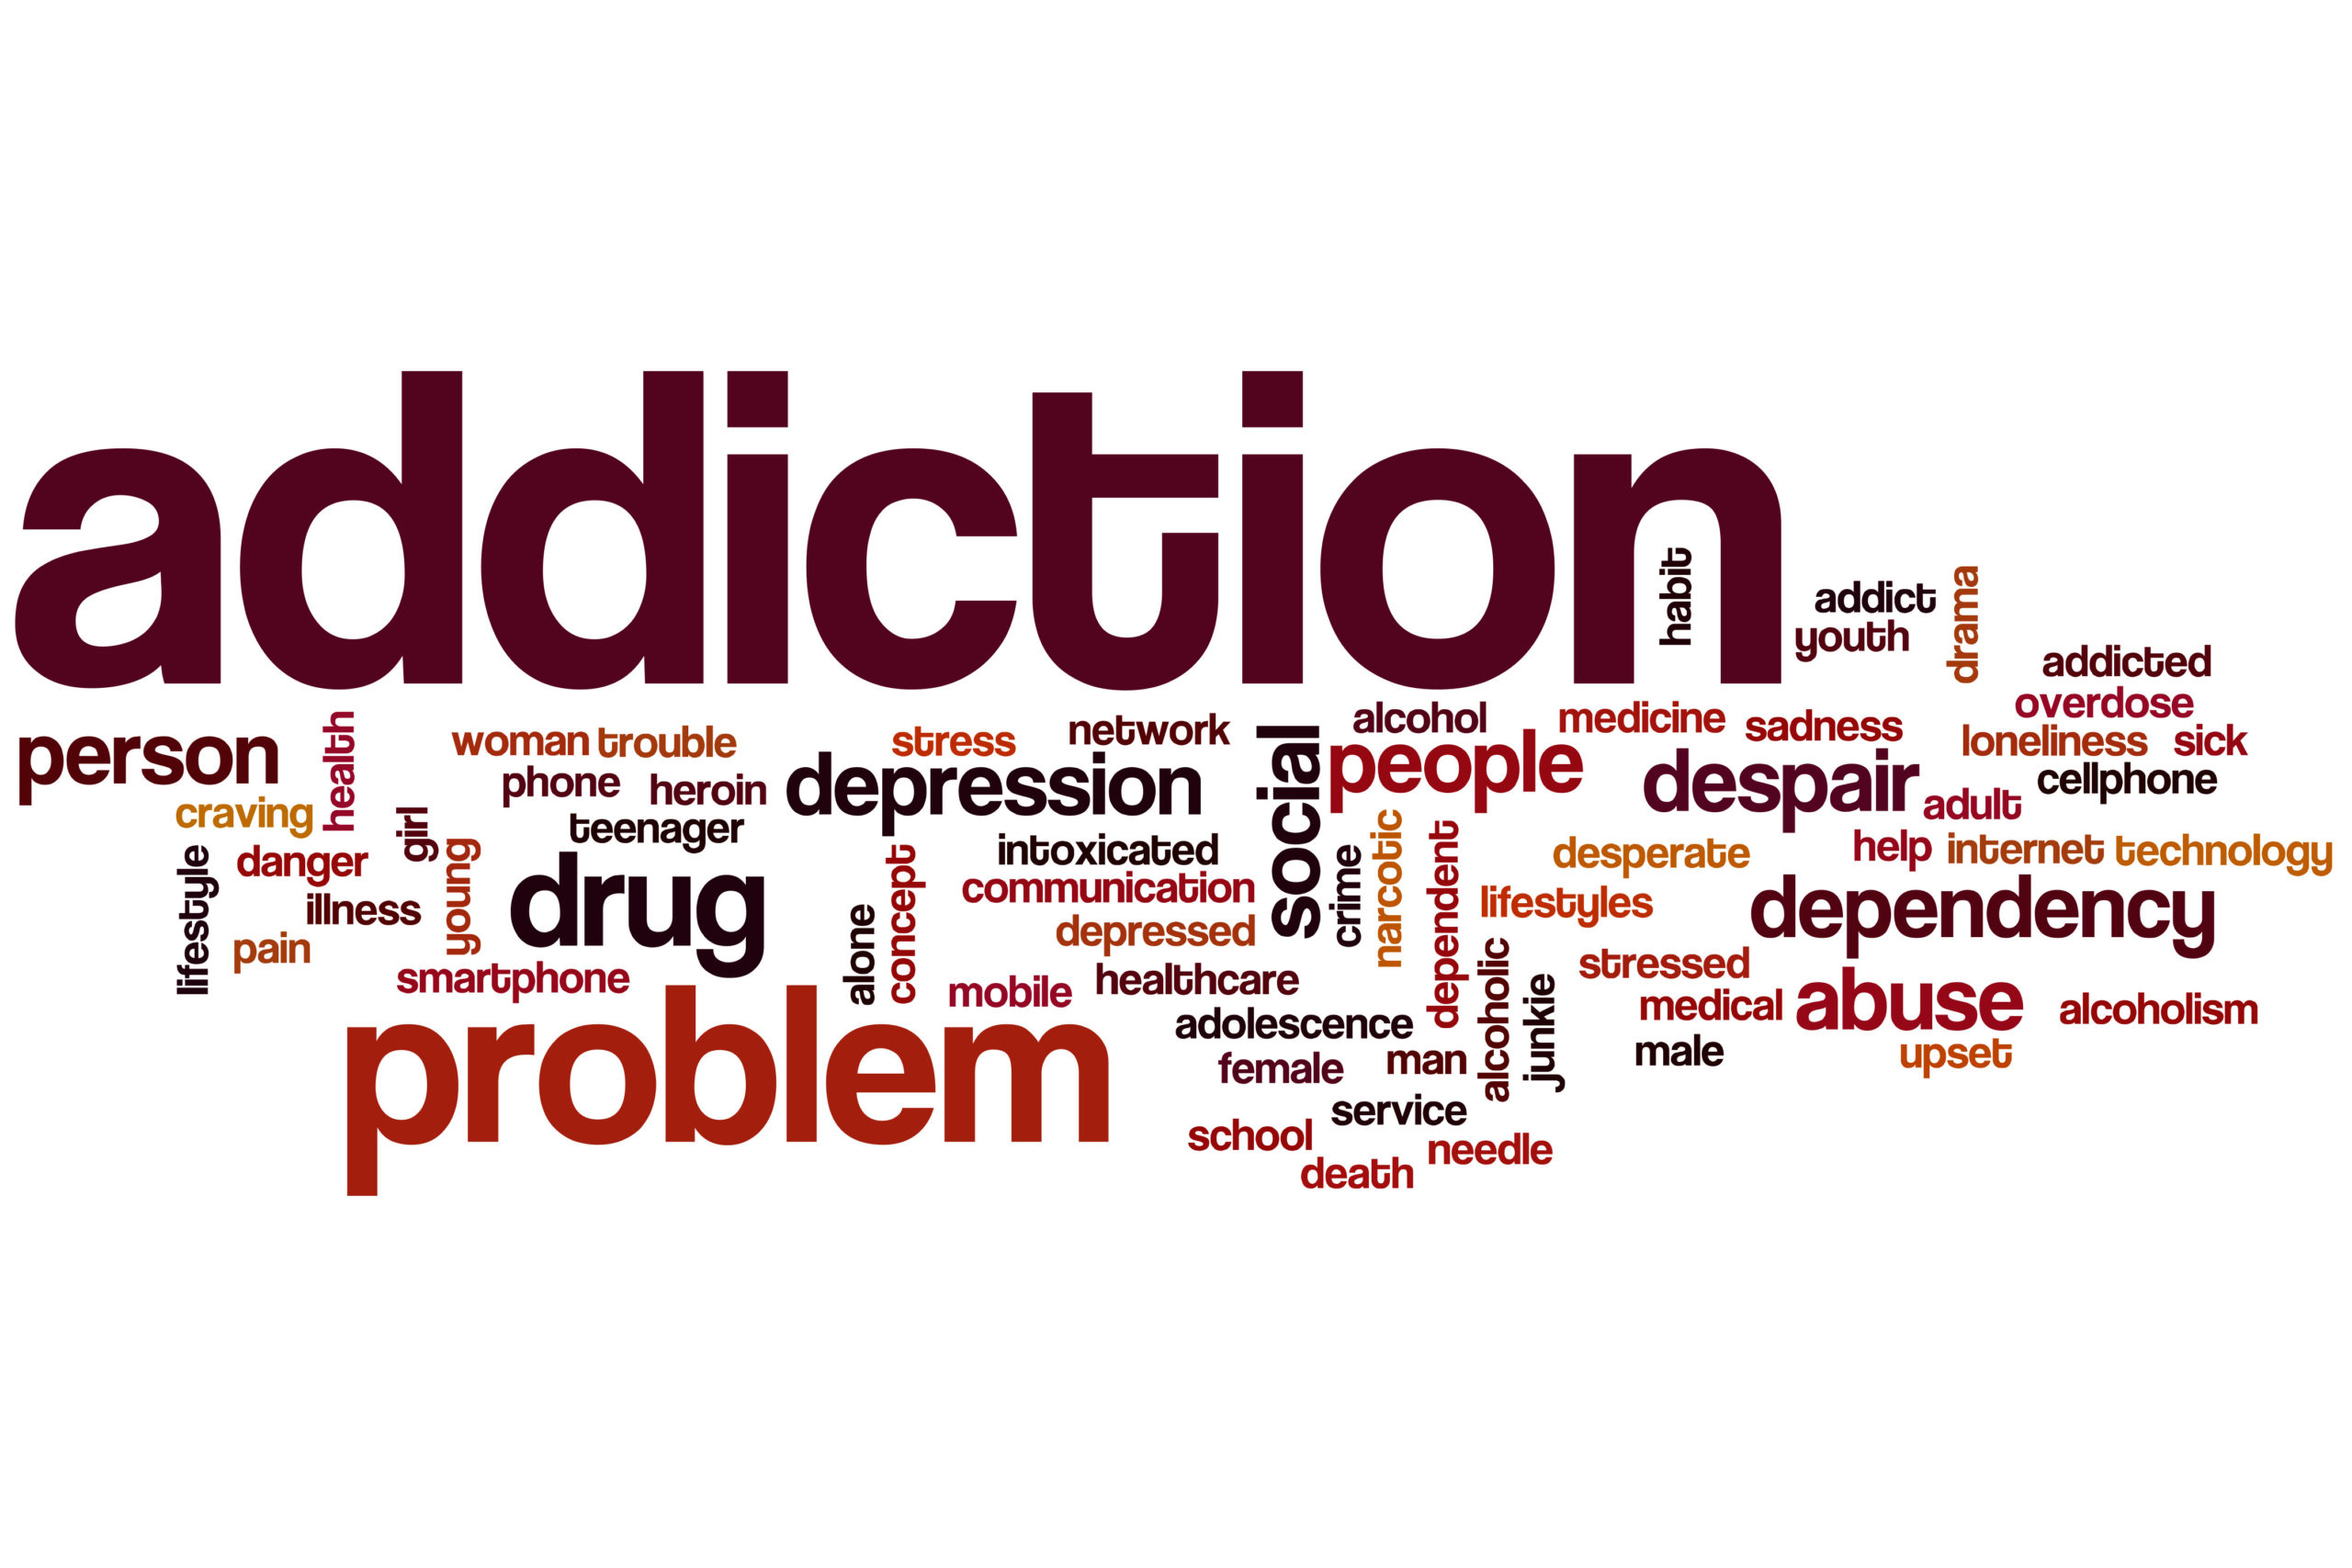 addiction myths